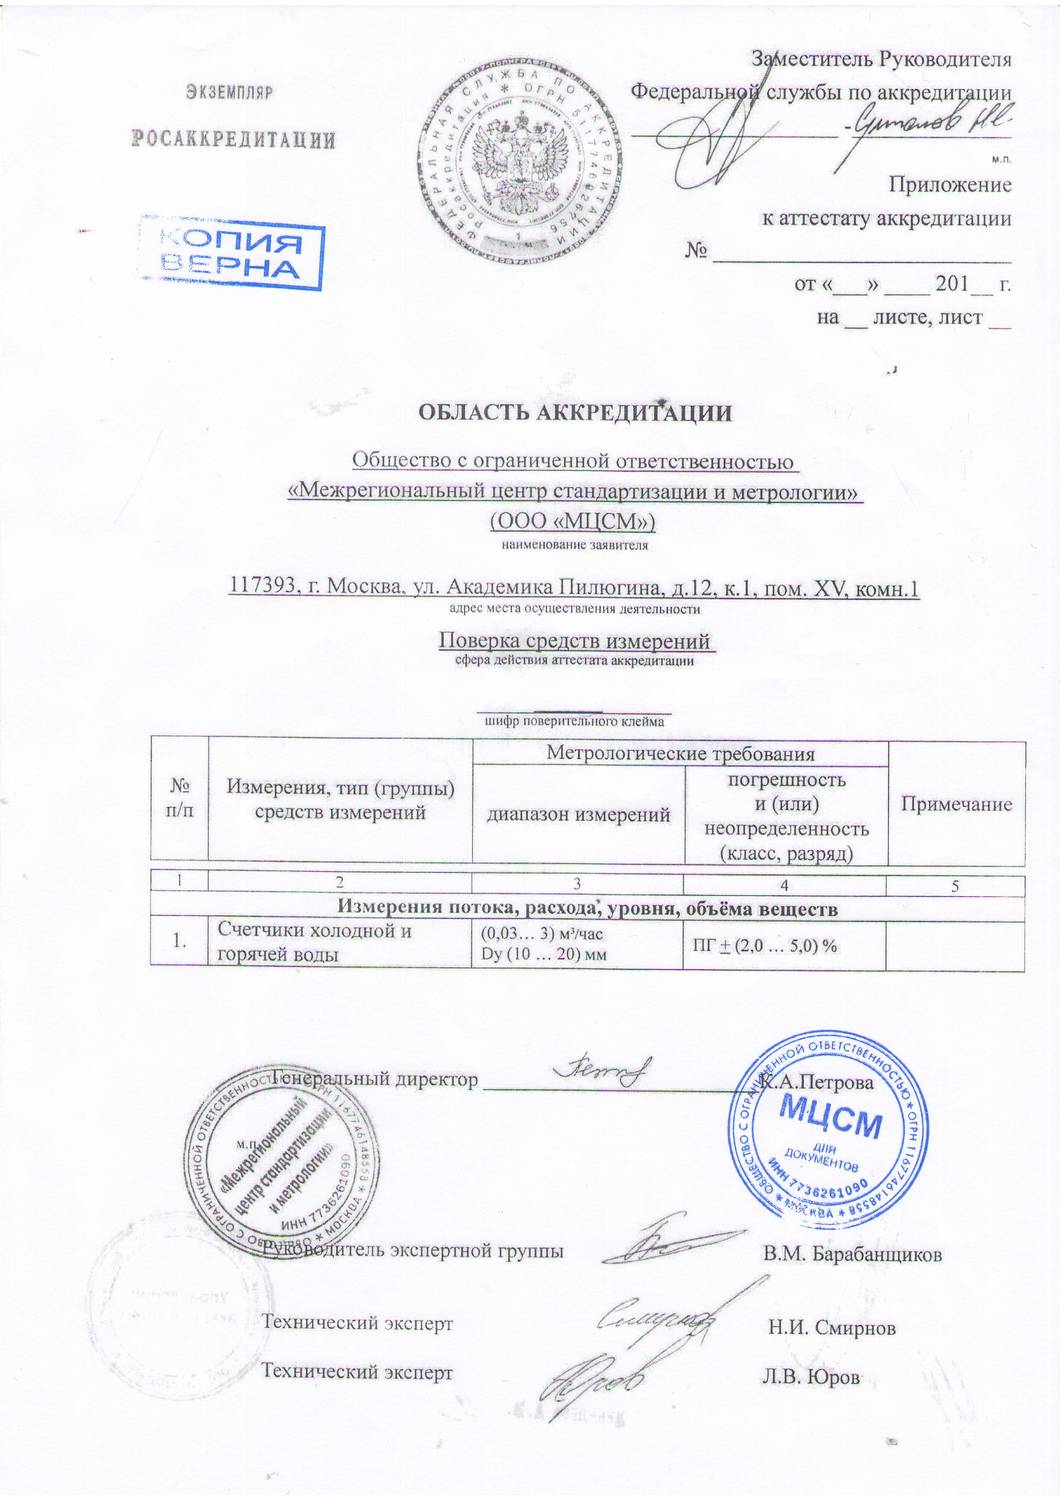 Сертификат «Межрегиональный центр стандартизации и метрологии» Краснодар